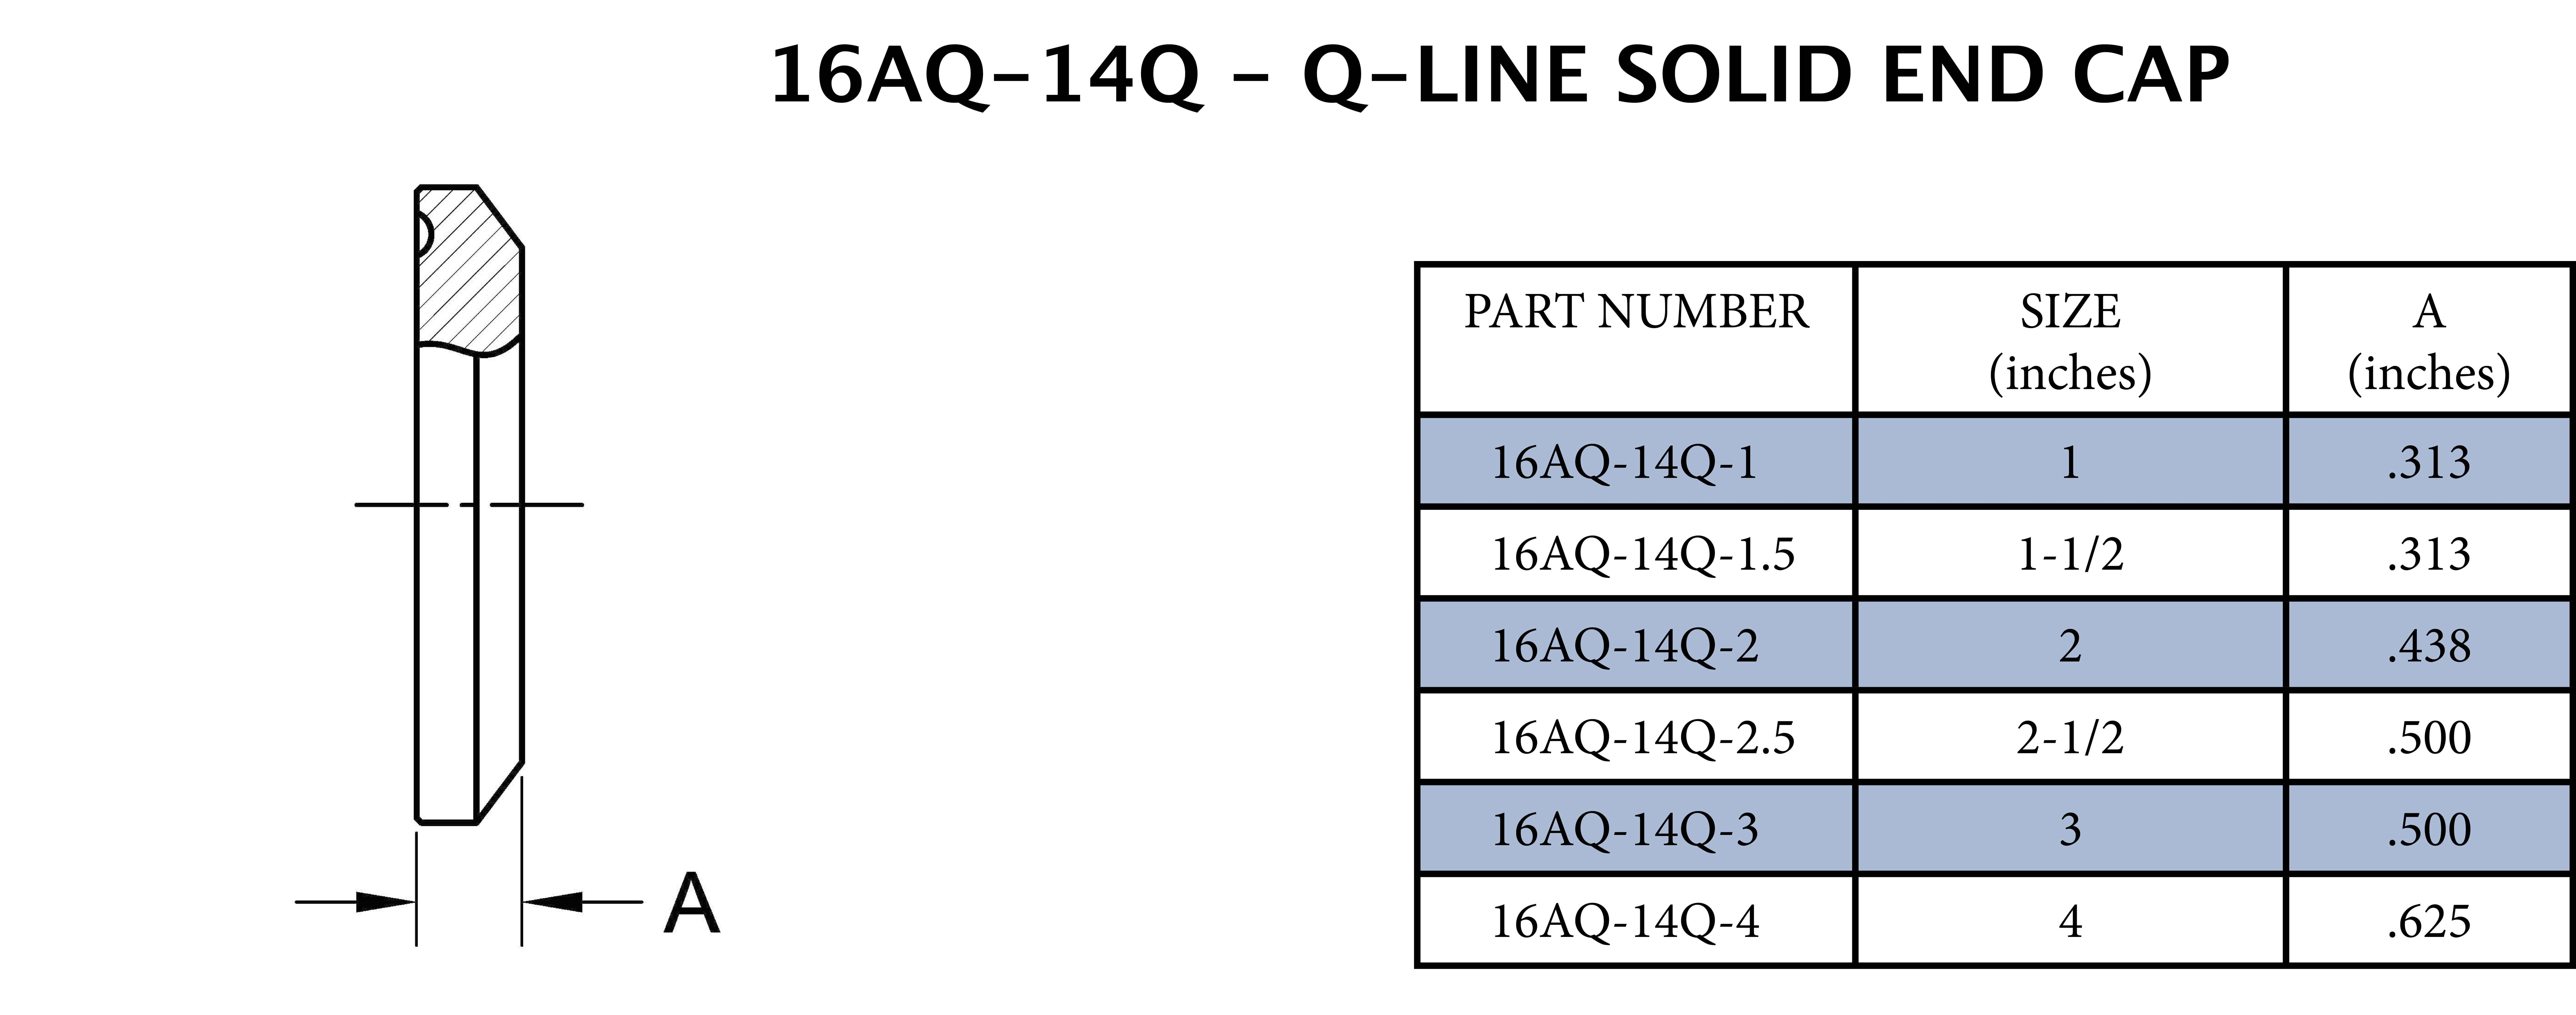 3 Q-Line Solid End Cap - 1/2 Long 304SS